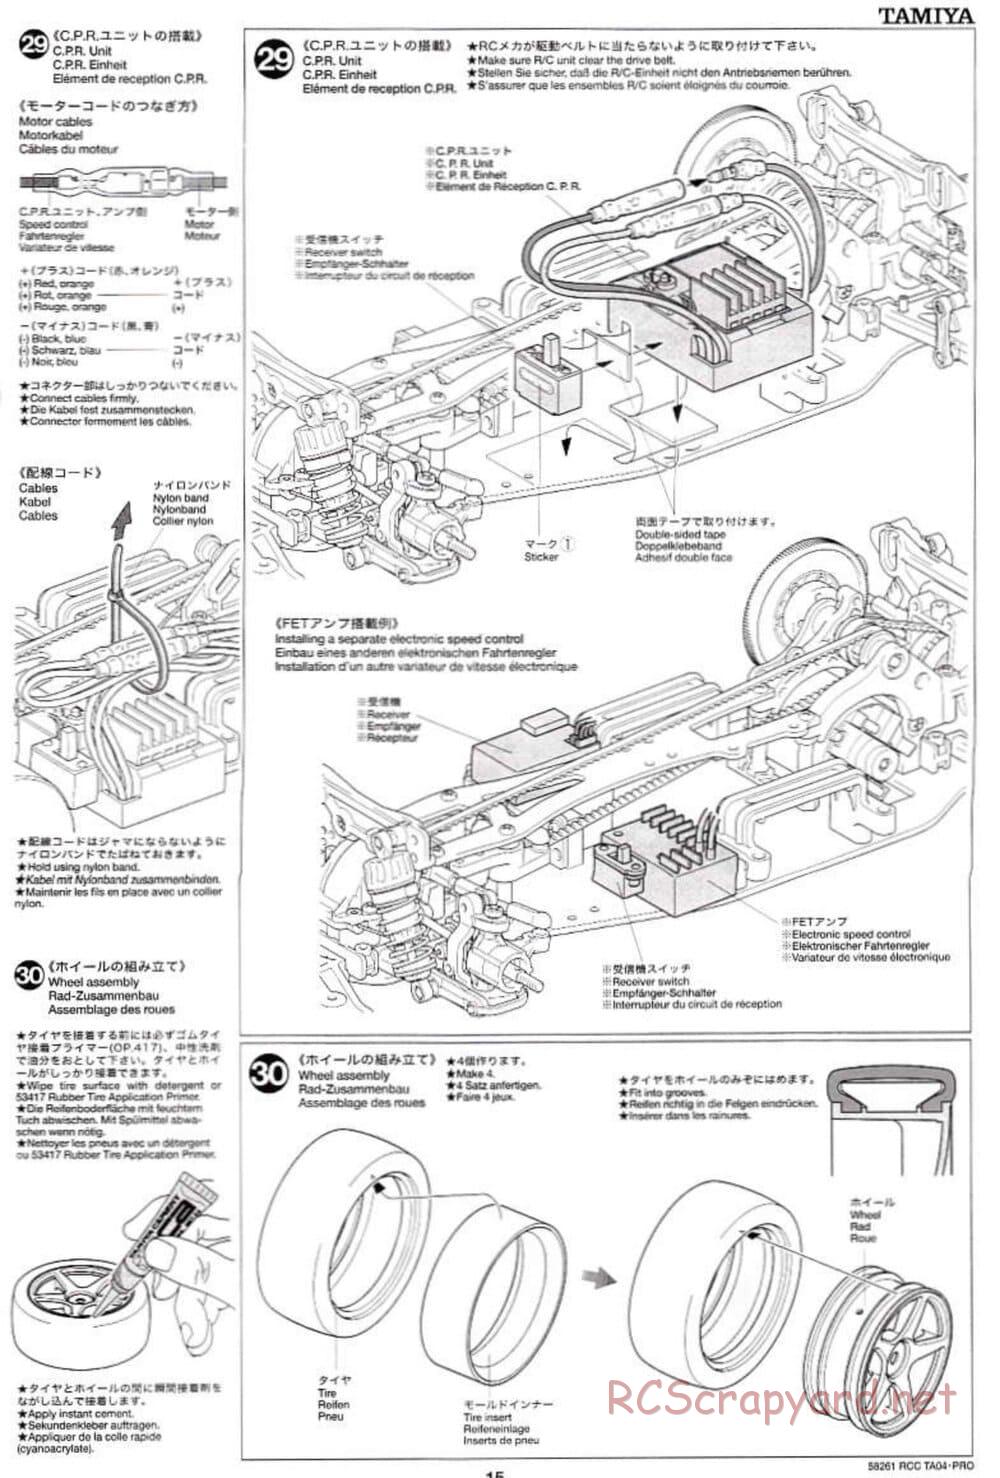 Tamiya - TA-04 Pro Chassis - Manual - Page 15